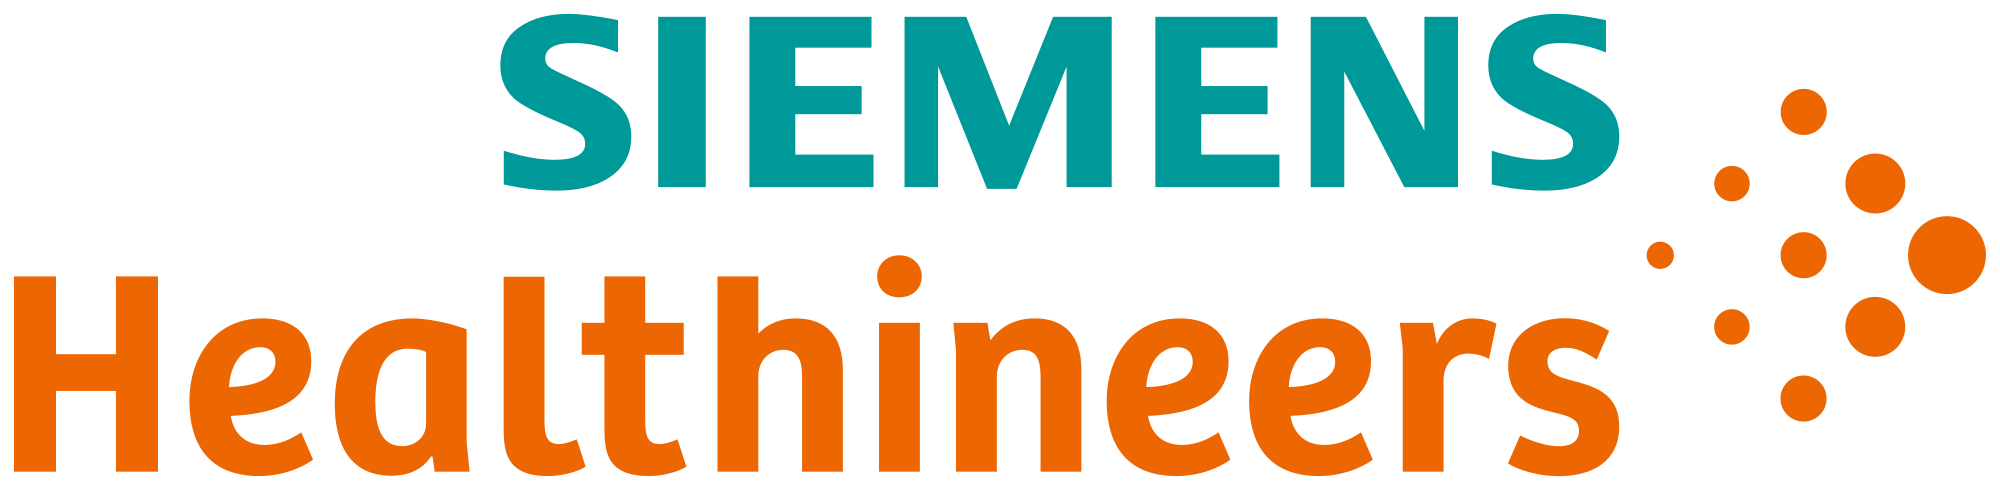 Siemens Logo - Siemens Healthineers logo.svg